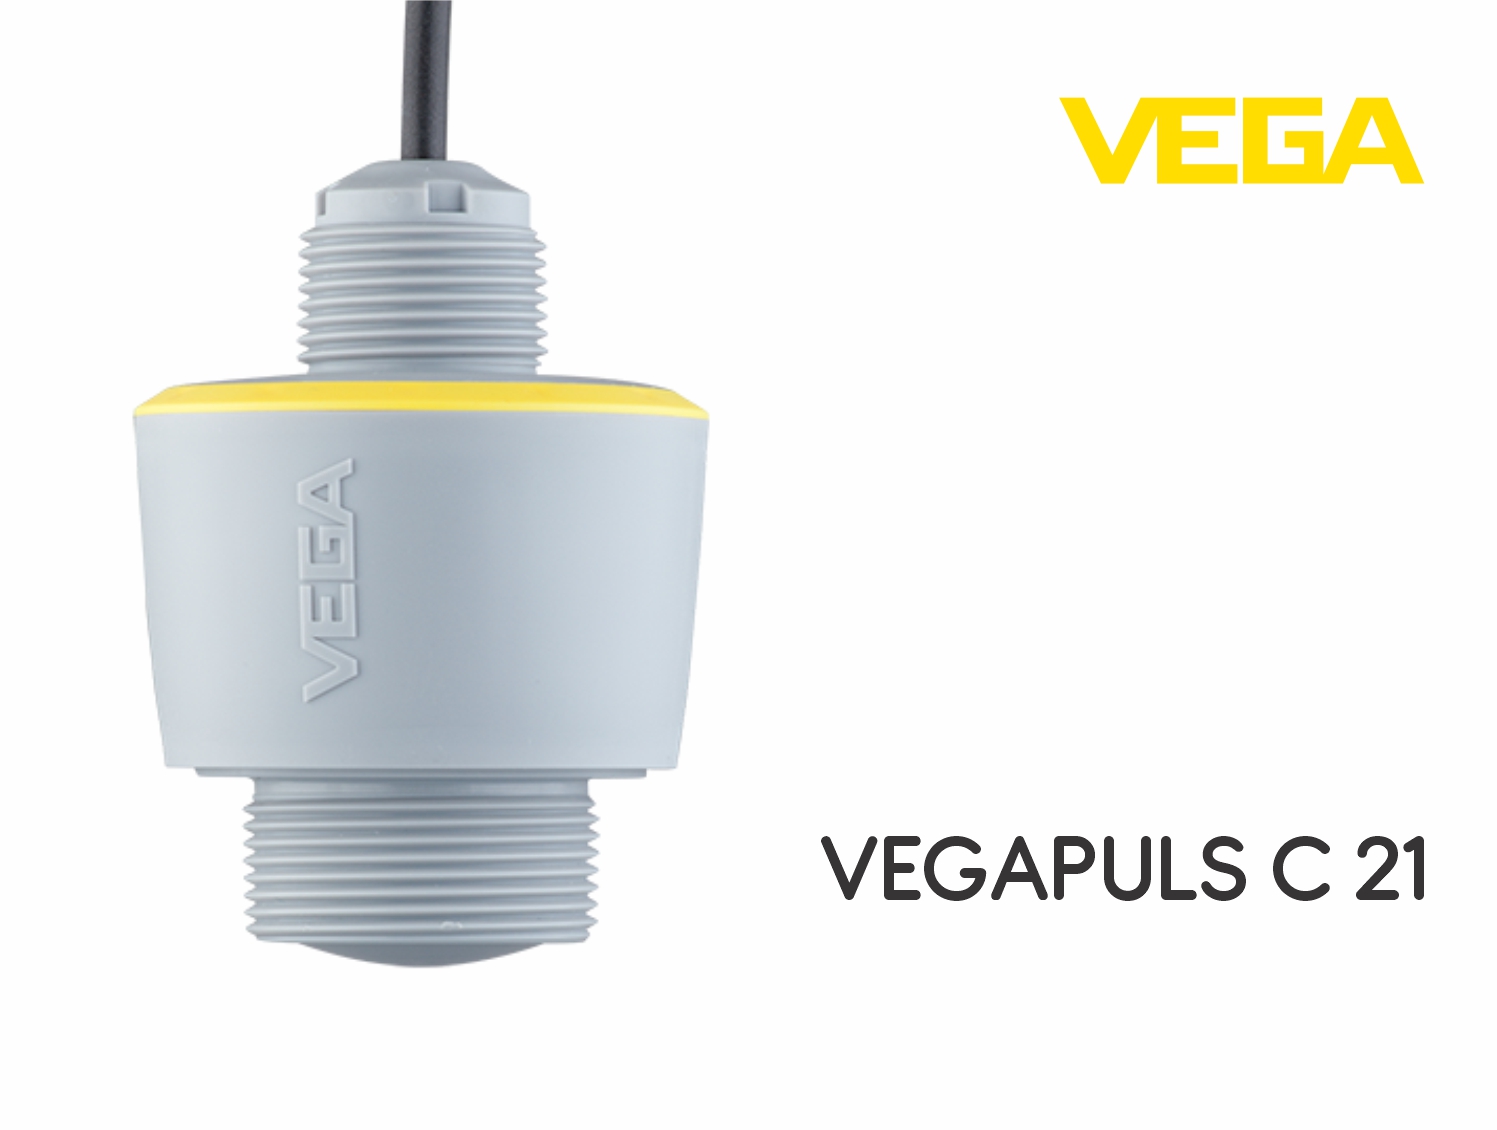 Представляем вам VEGAPULS C 21 — Радарный уровнемер для непрерывного измерения уровня, с постоянно присоединенным кабелем